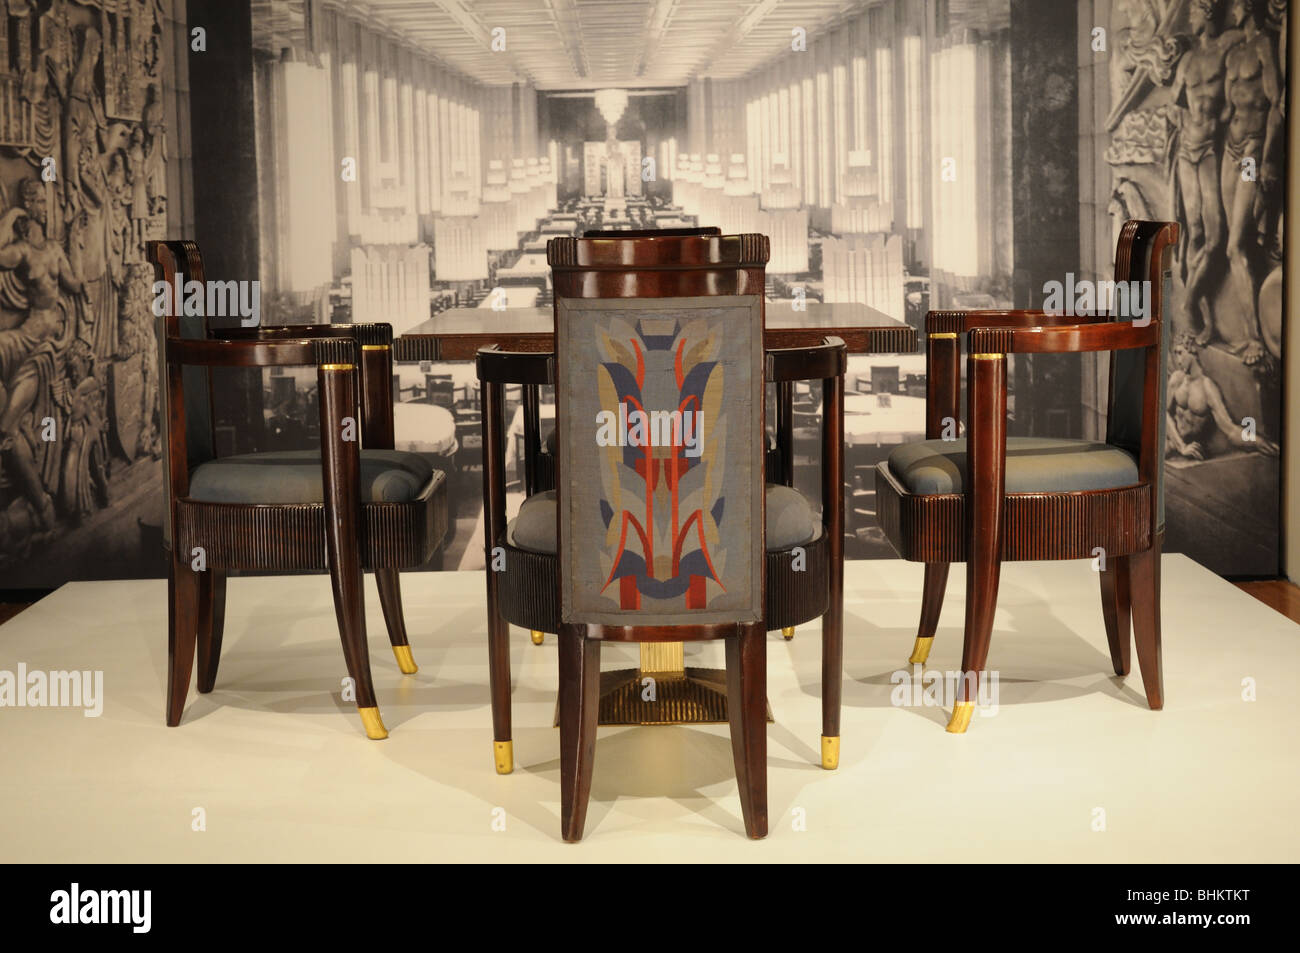 Les meubles de la Normandie de première classe de la salle à manger et la dorure avait détails cannelés sur les jambes avant de les chaises. Banque D'Images